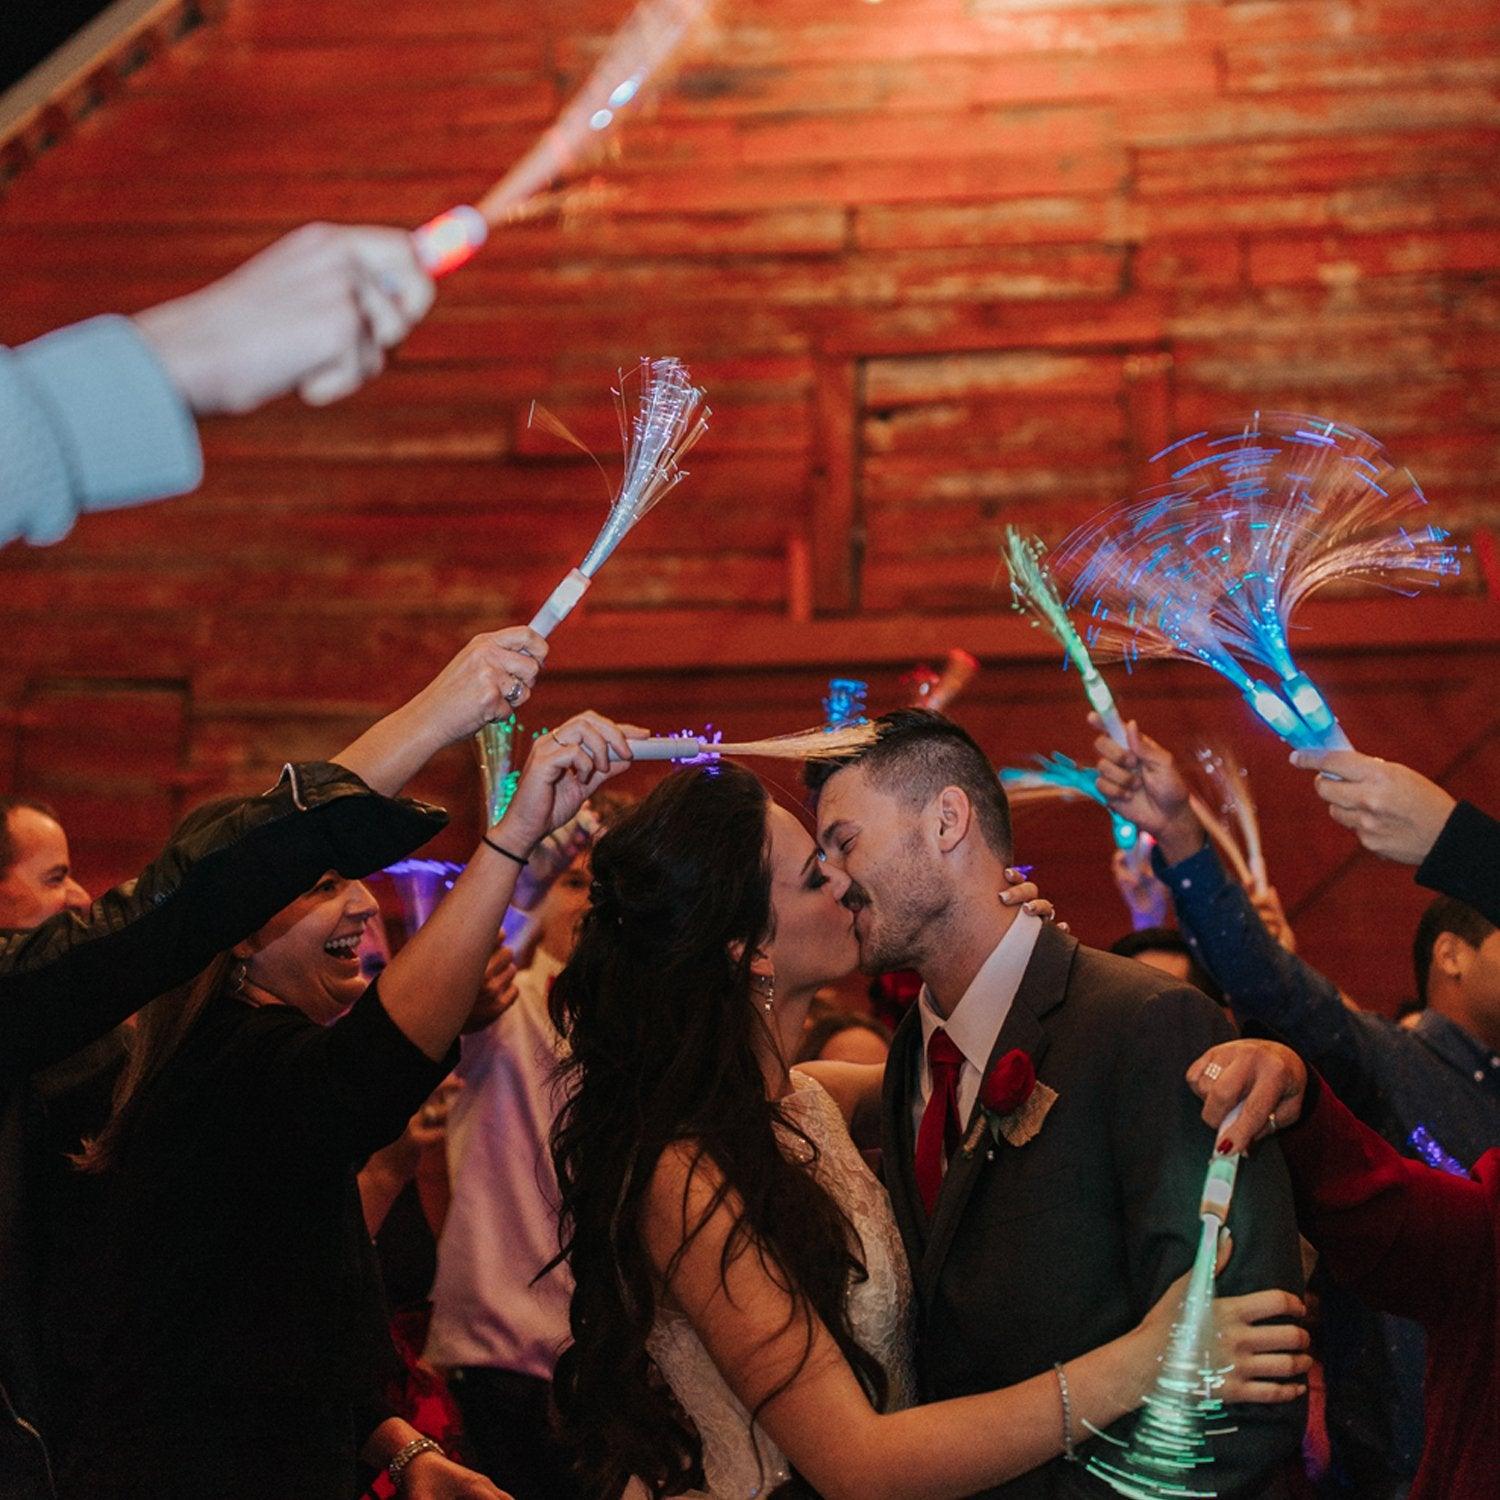 Glow stick wedding, Wedding reception dance floor, Wedding reception fun